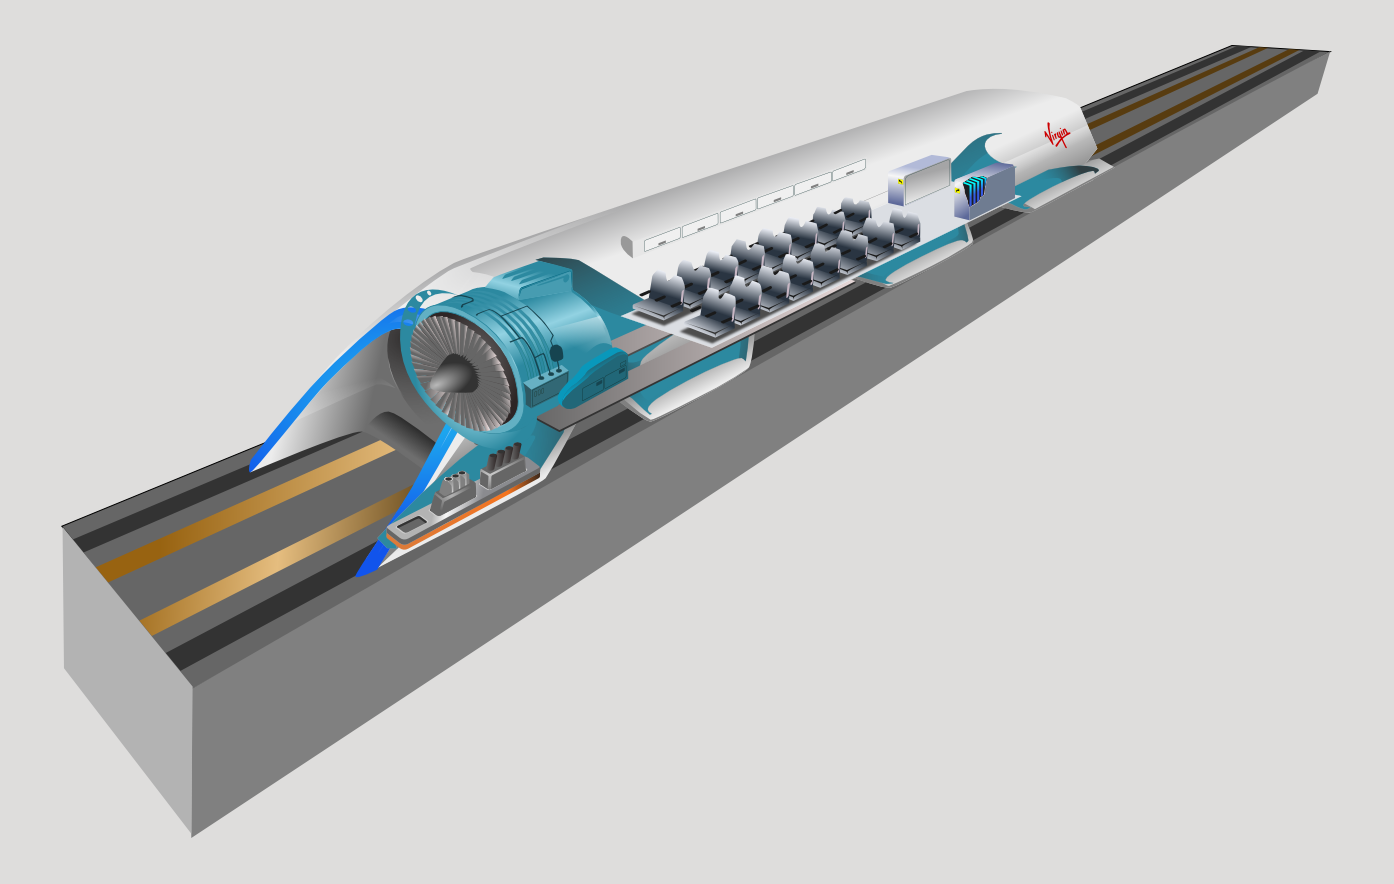 Das Teilvakuum verhilft zu schnelleren Geschwindigkeiten mit weniger Energieaufwand. Der Rest der Luft wird unter den Schlitten gezogen. Auf diesem Luftpolster gleitet der Hyperloop mit Geschwindigkeiten bis zu 1500 km/h. Bildquelle: https://de.wikipedia.org/wiki/Hyperloop 